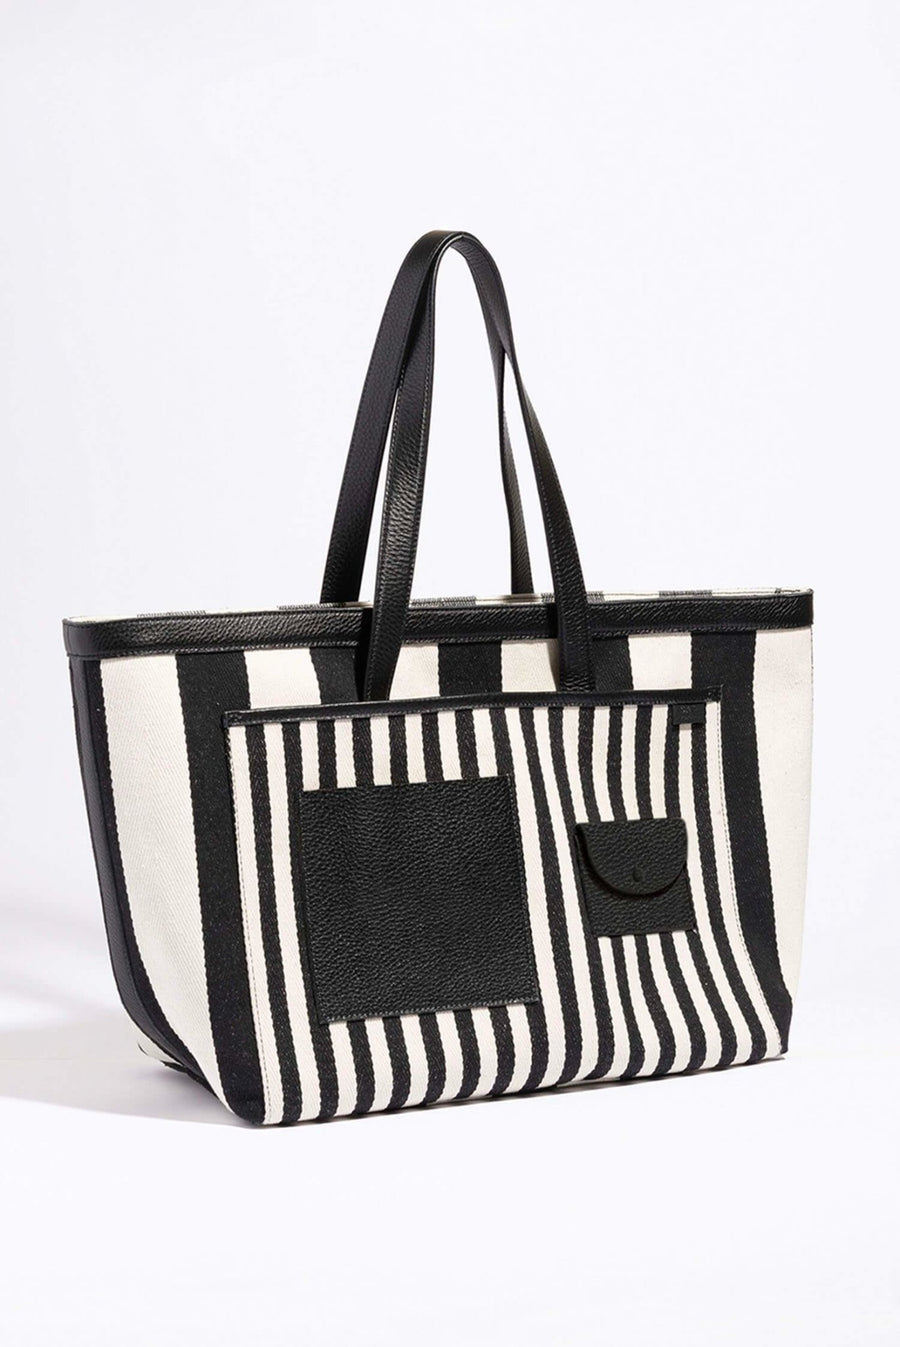 New In - OAD NEW YORK Designer Handbags